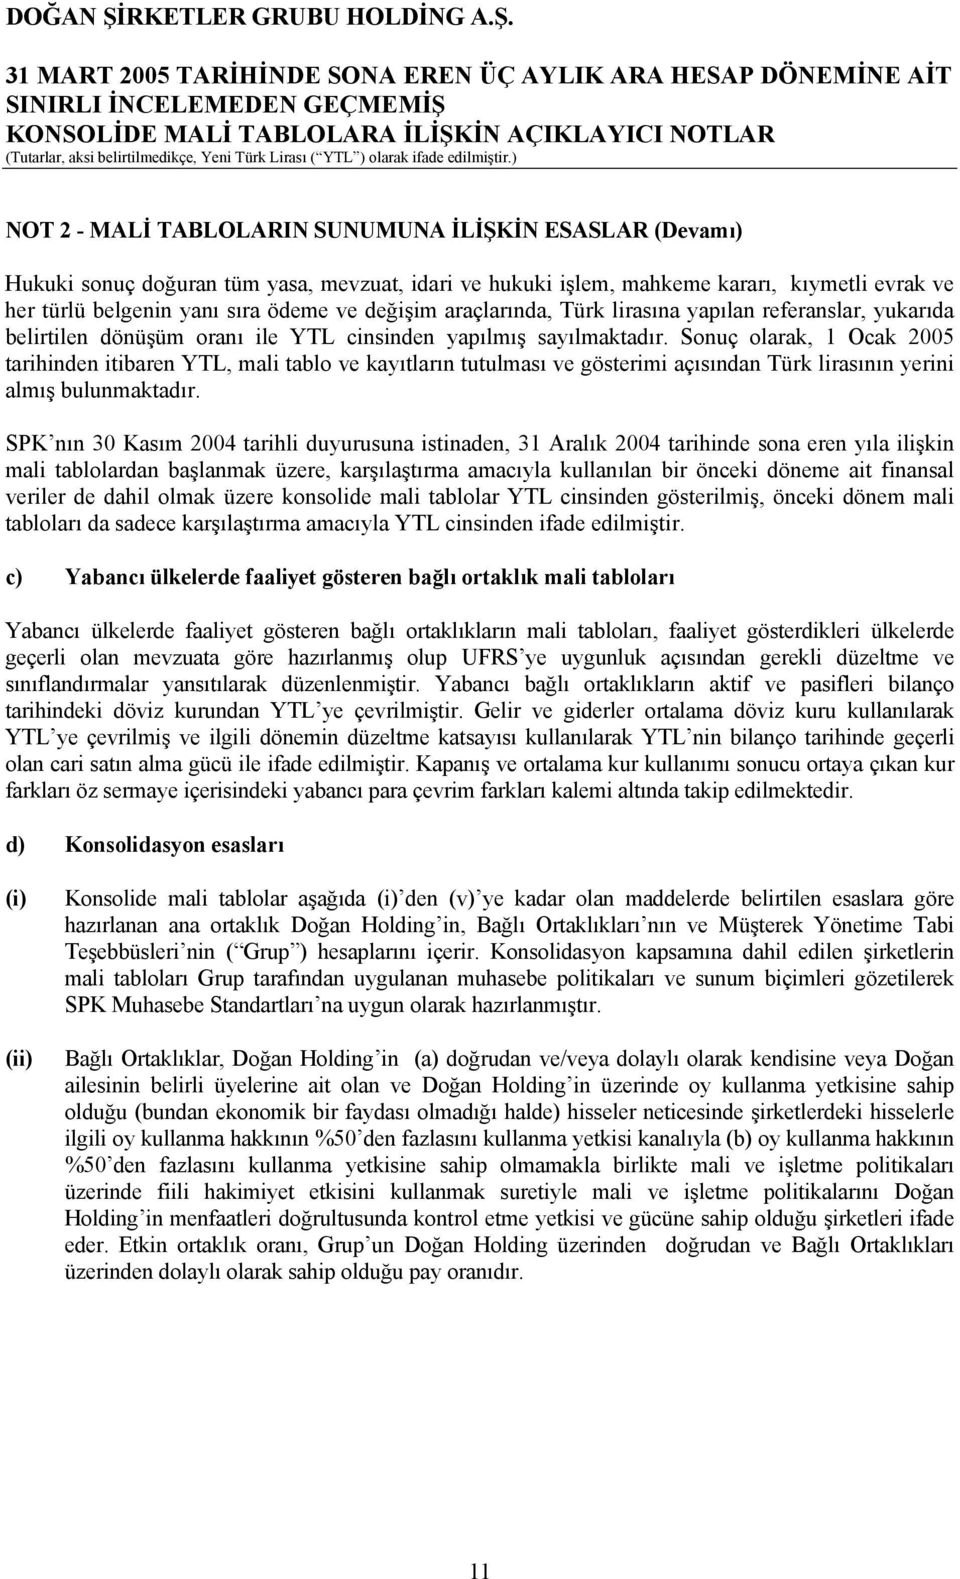 Sonuç olarak, 1 Ocak 2005 tarihinden itibaren YTL, mali tablo ve kayıtların tutulması ve gösterimi açısından Türk lirasının yerini almış bulunmaktadır.